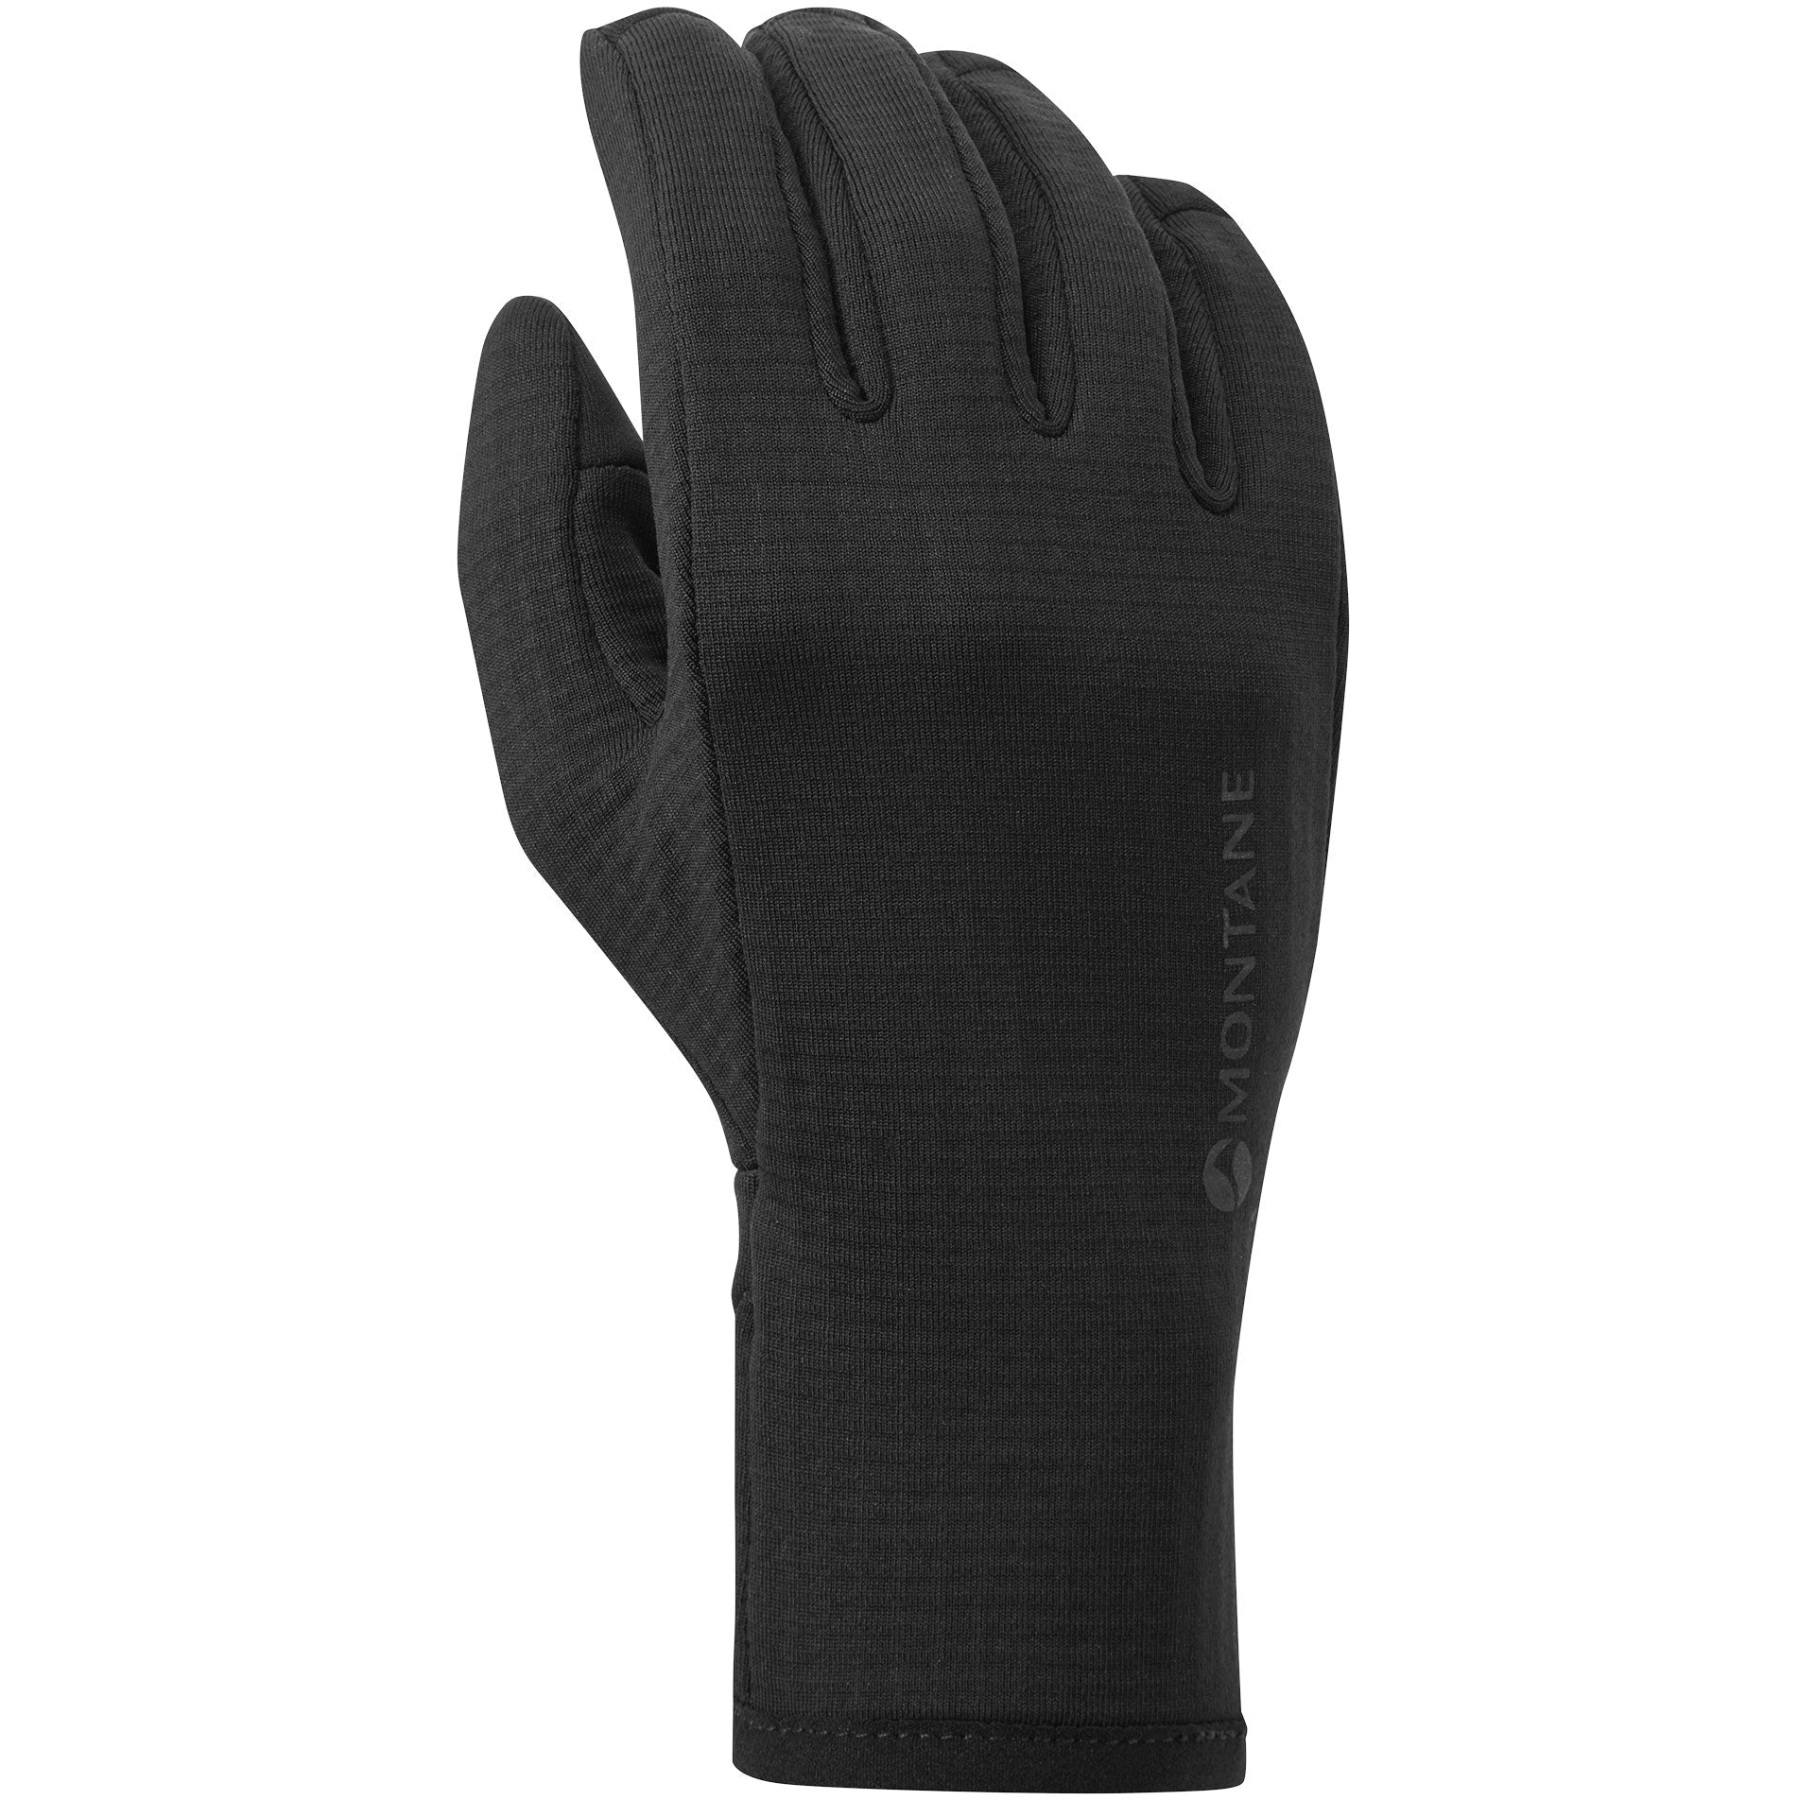 Produktbild von Montane Protium Damen Stretch Fleece Handschuhe - schwarz